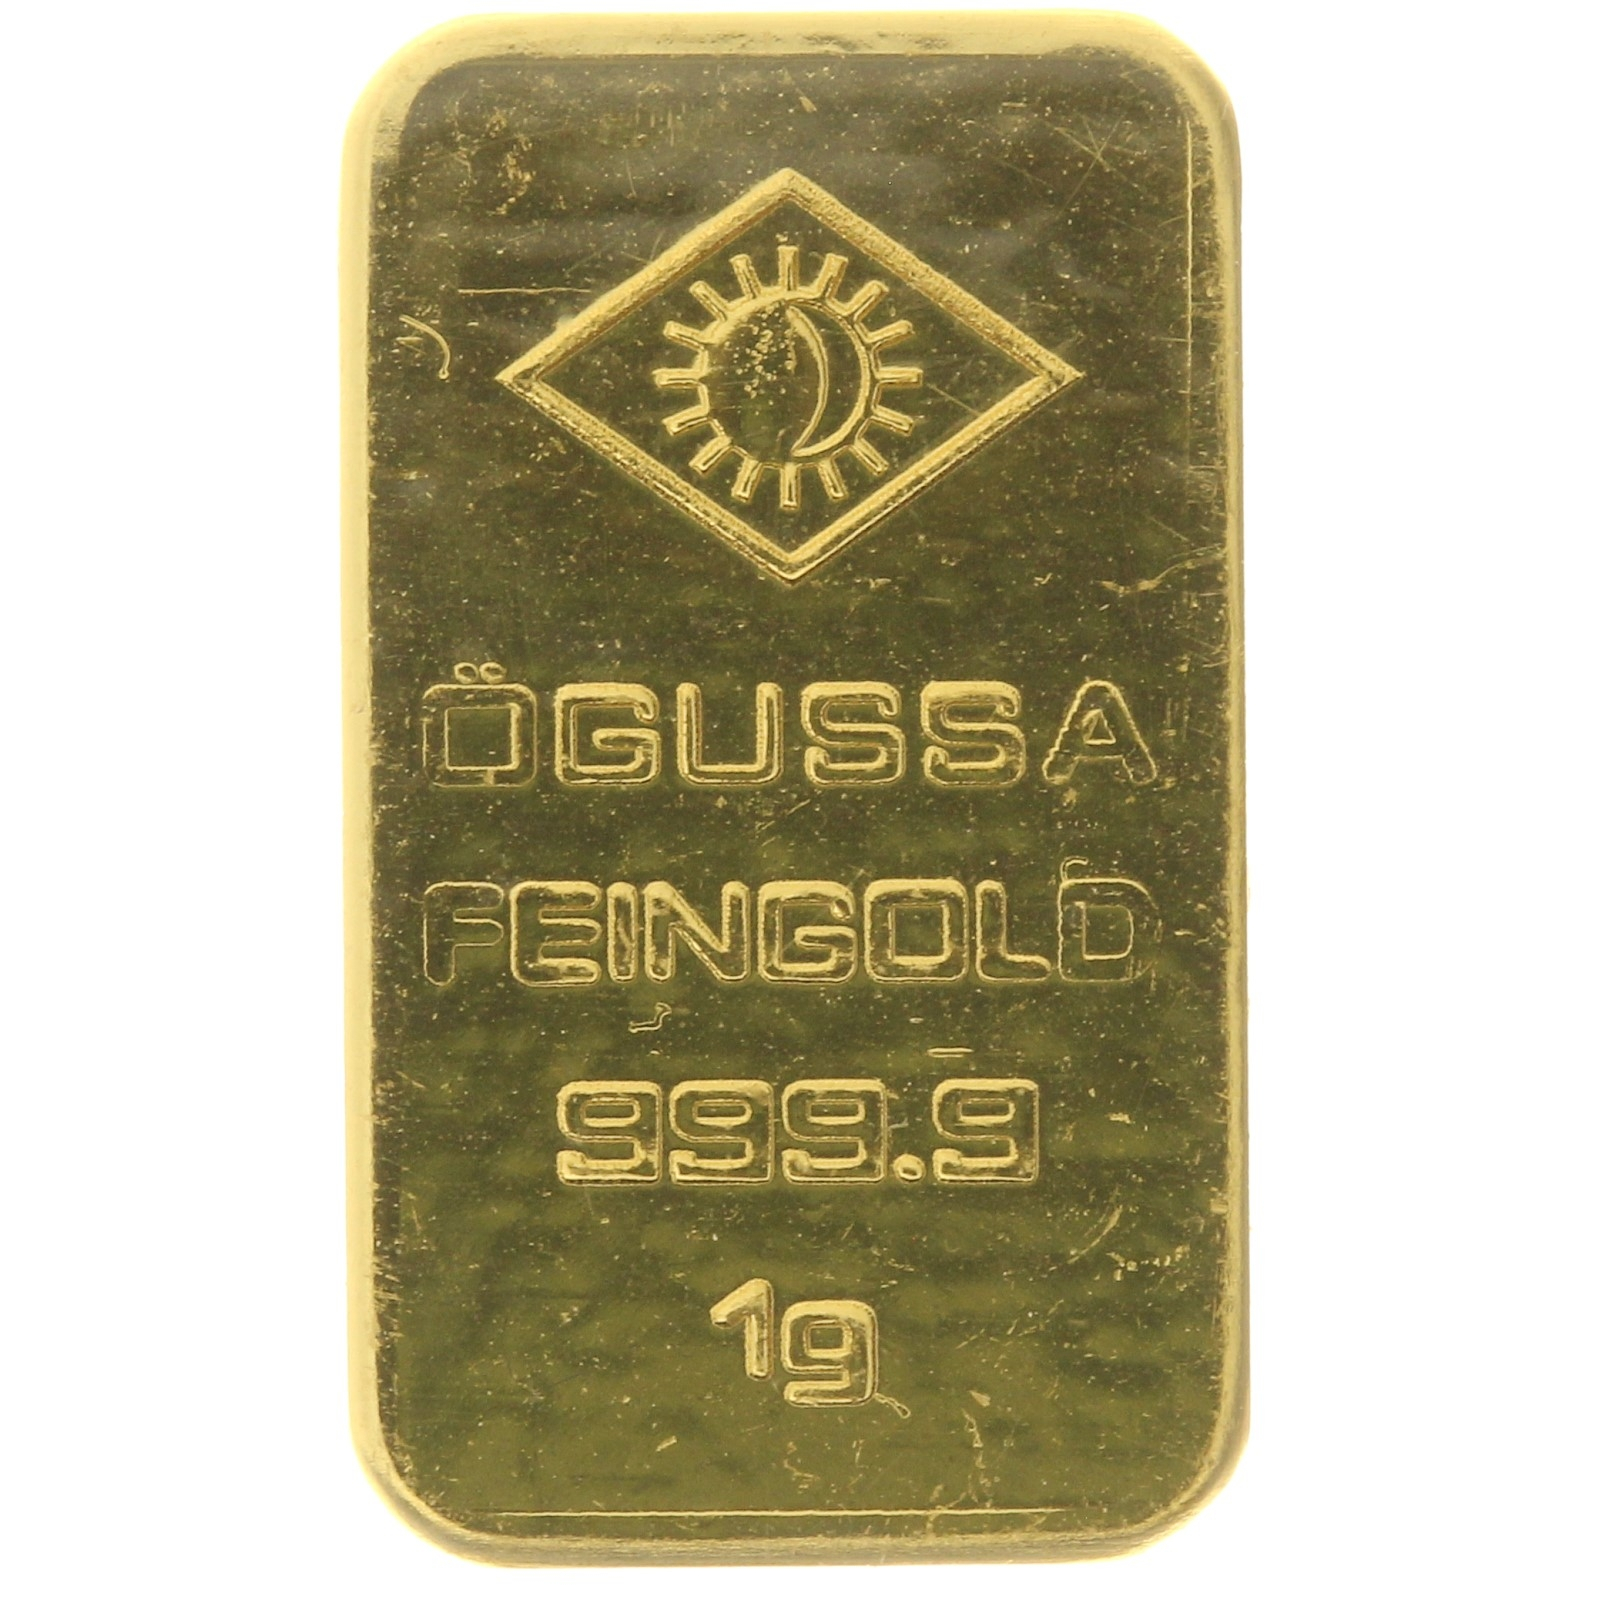 Ogussa - 1 gram fine gold - bar